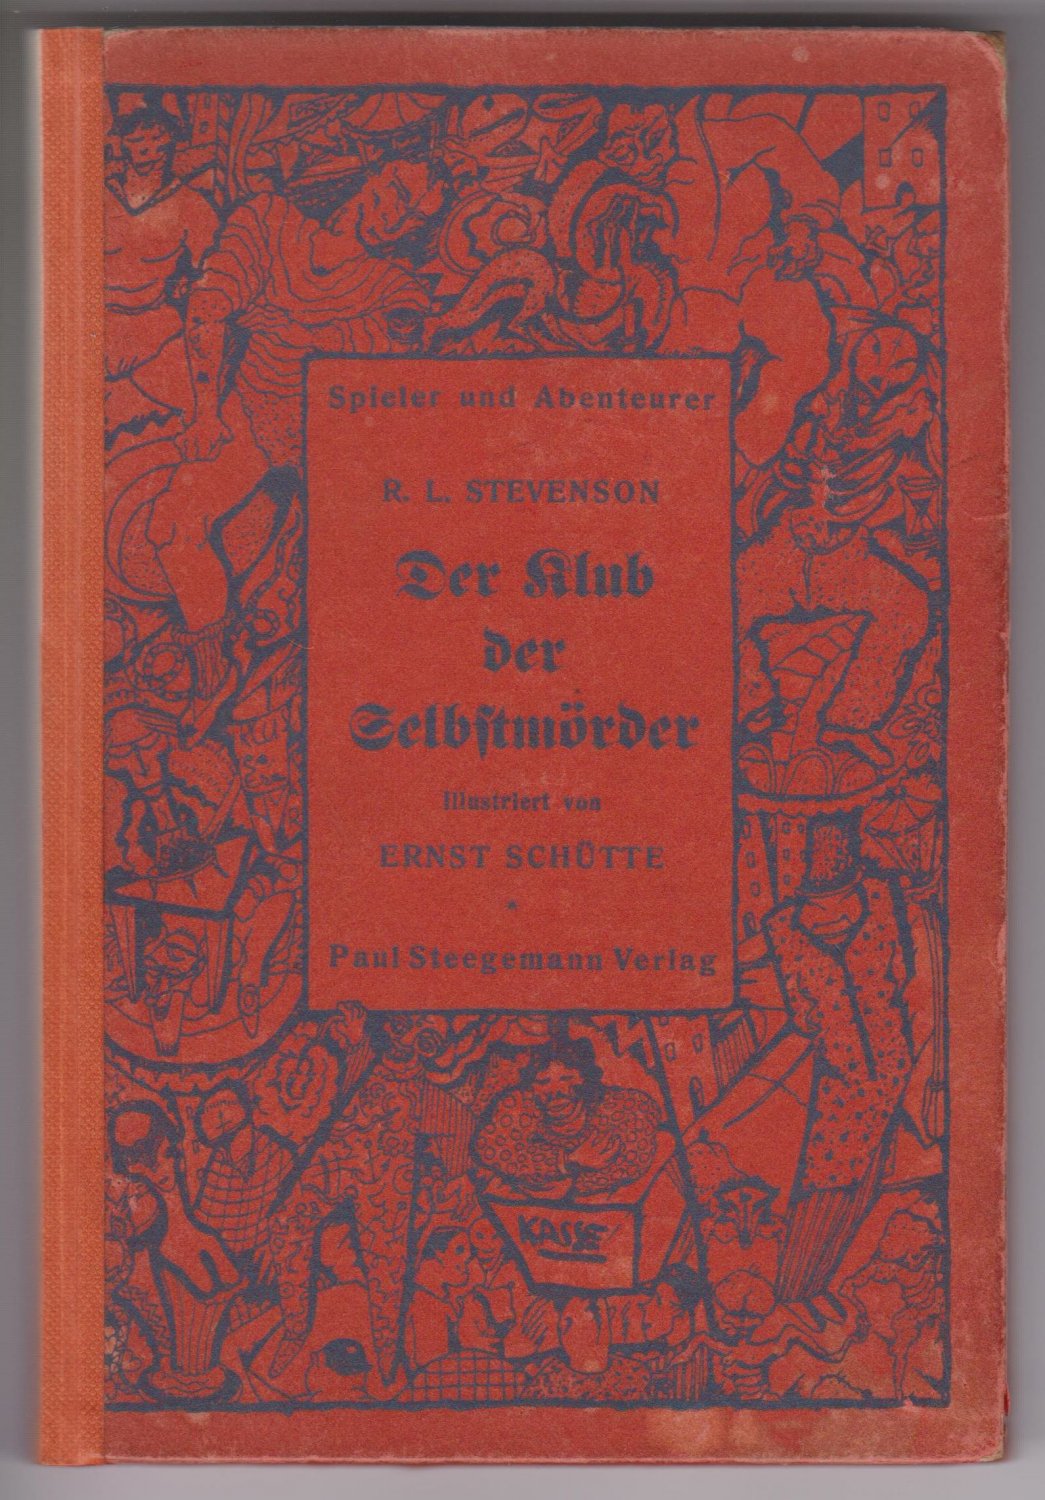 STEVENSON, Robert Louis:  Der Klub der Selbstmörder. Illustriert von Ernst Schütte. Übertragen von Rainer Maria Schulze. 